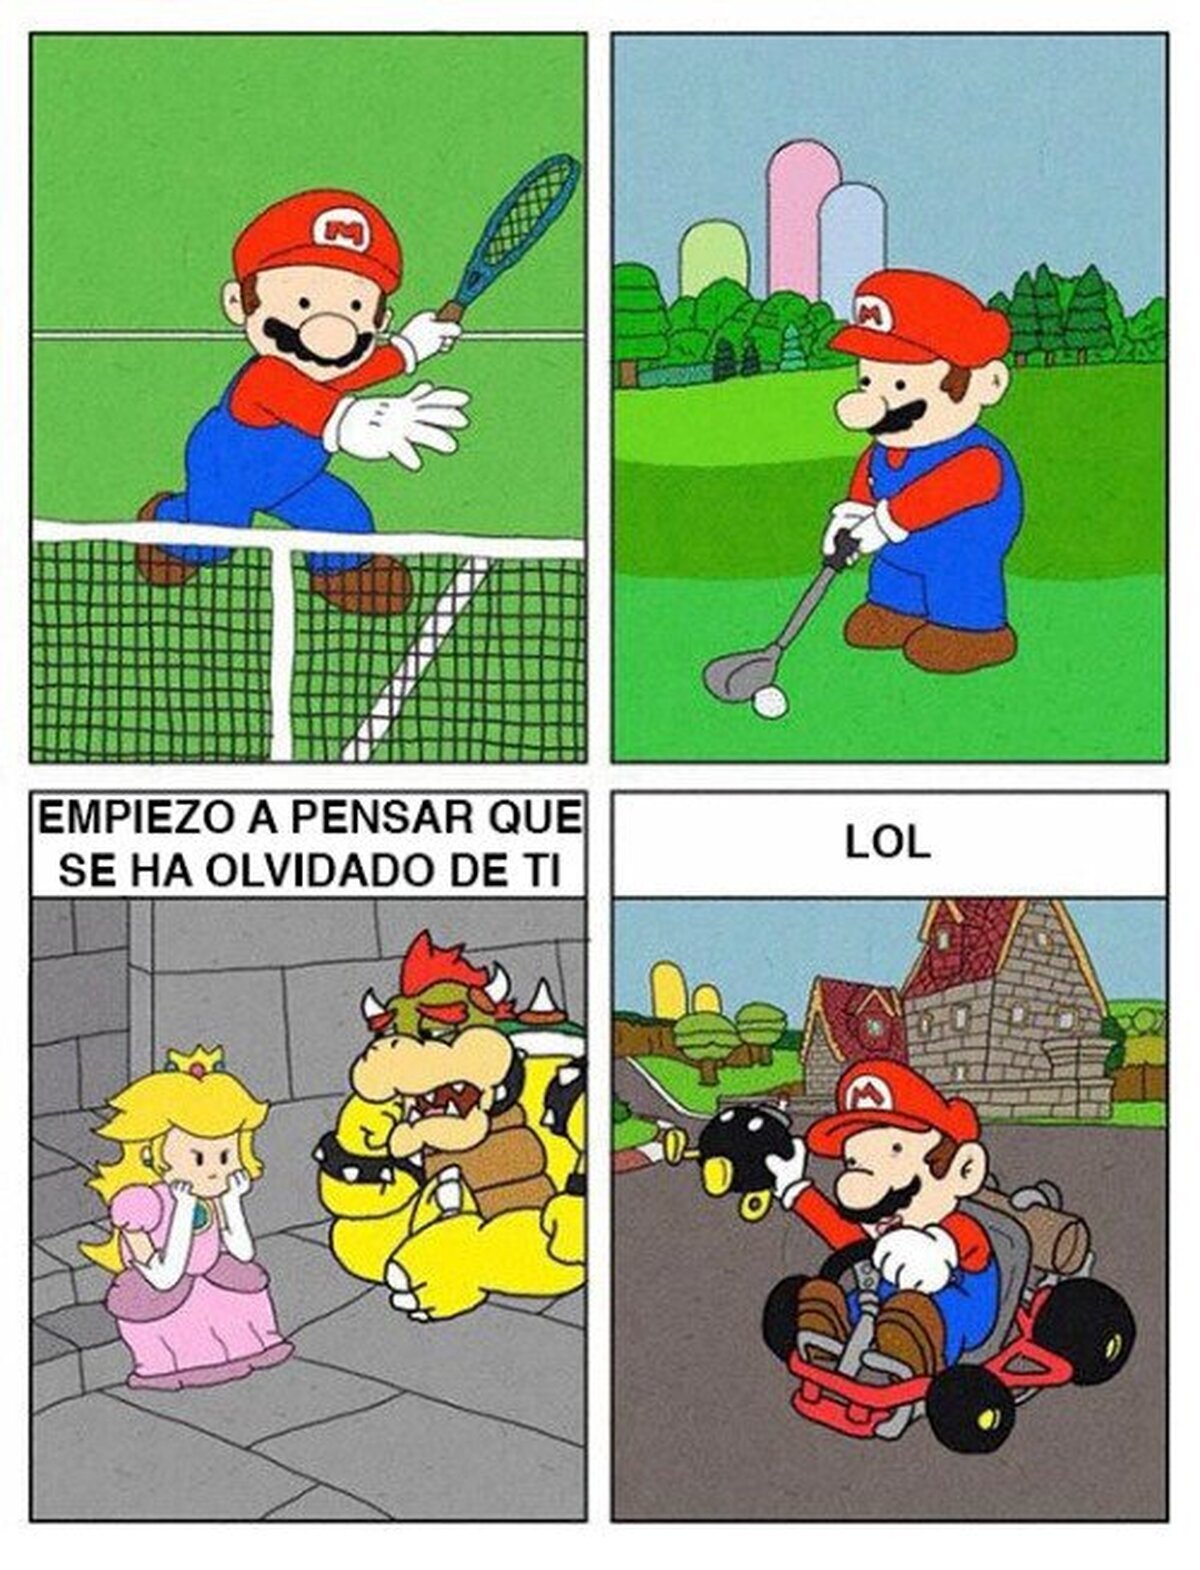 Mario se ha olvidado de Peach